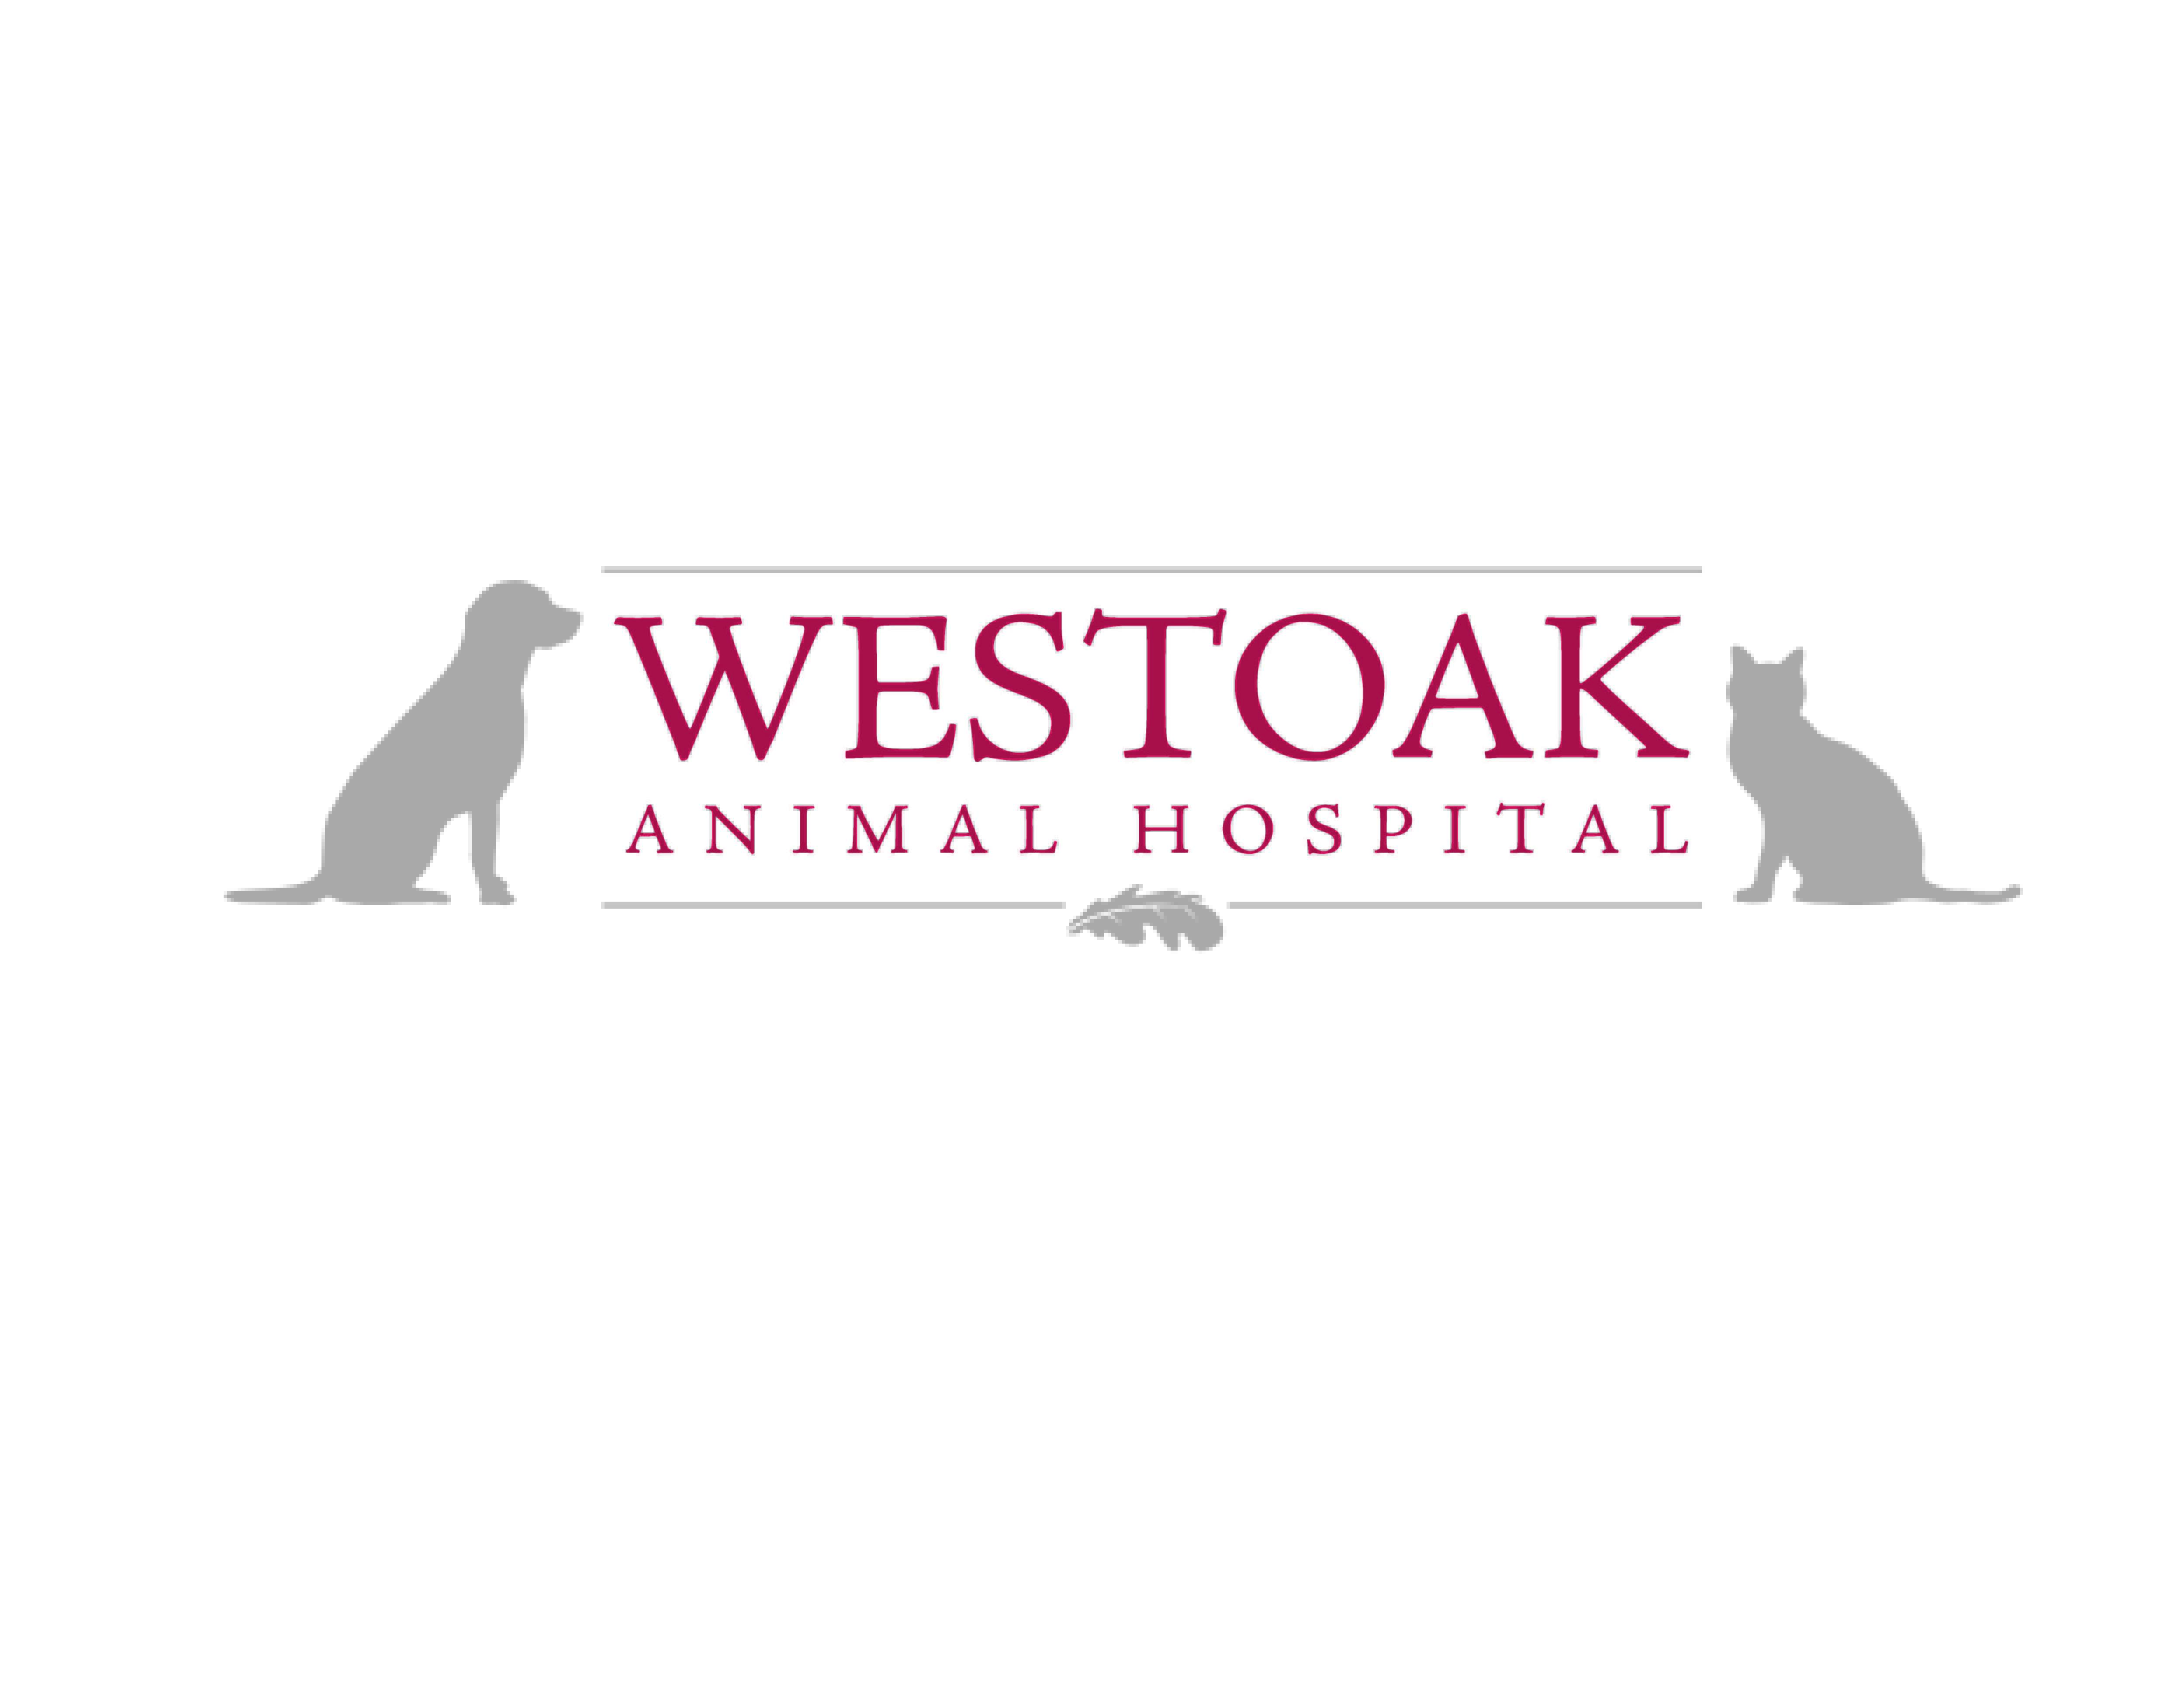 Westoak Animal Hospital